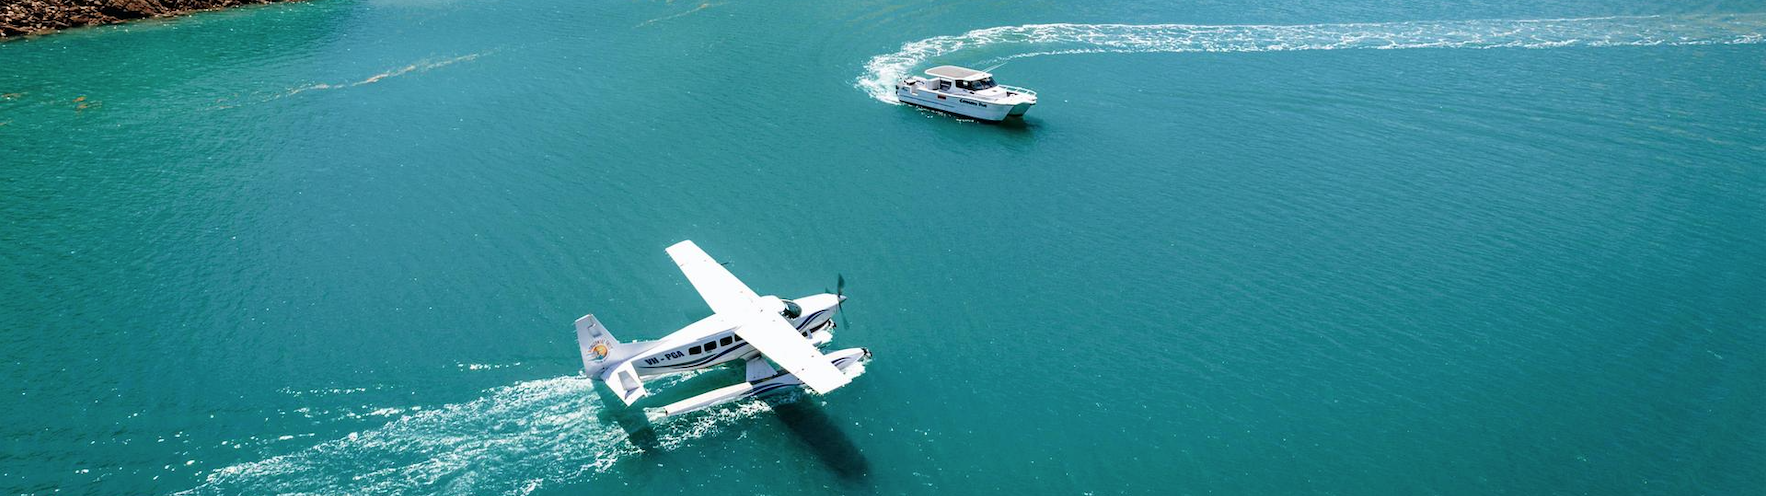 Австралийское дерби летающий самолет и лодка на воде